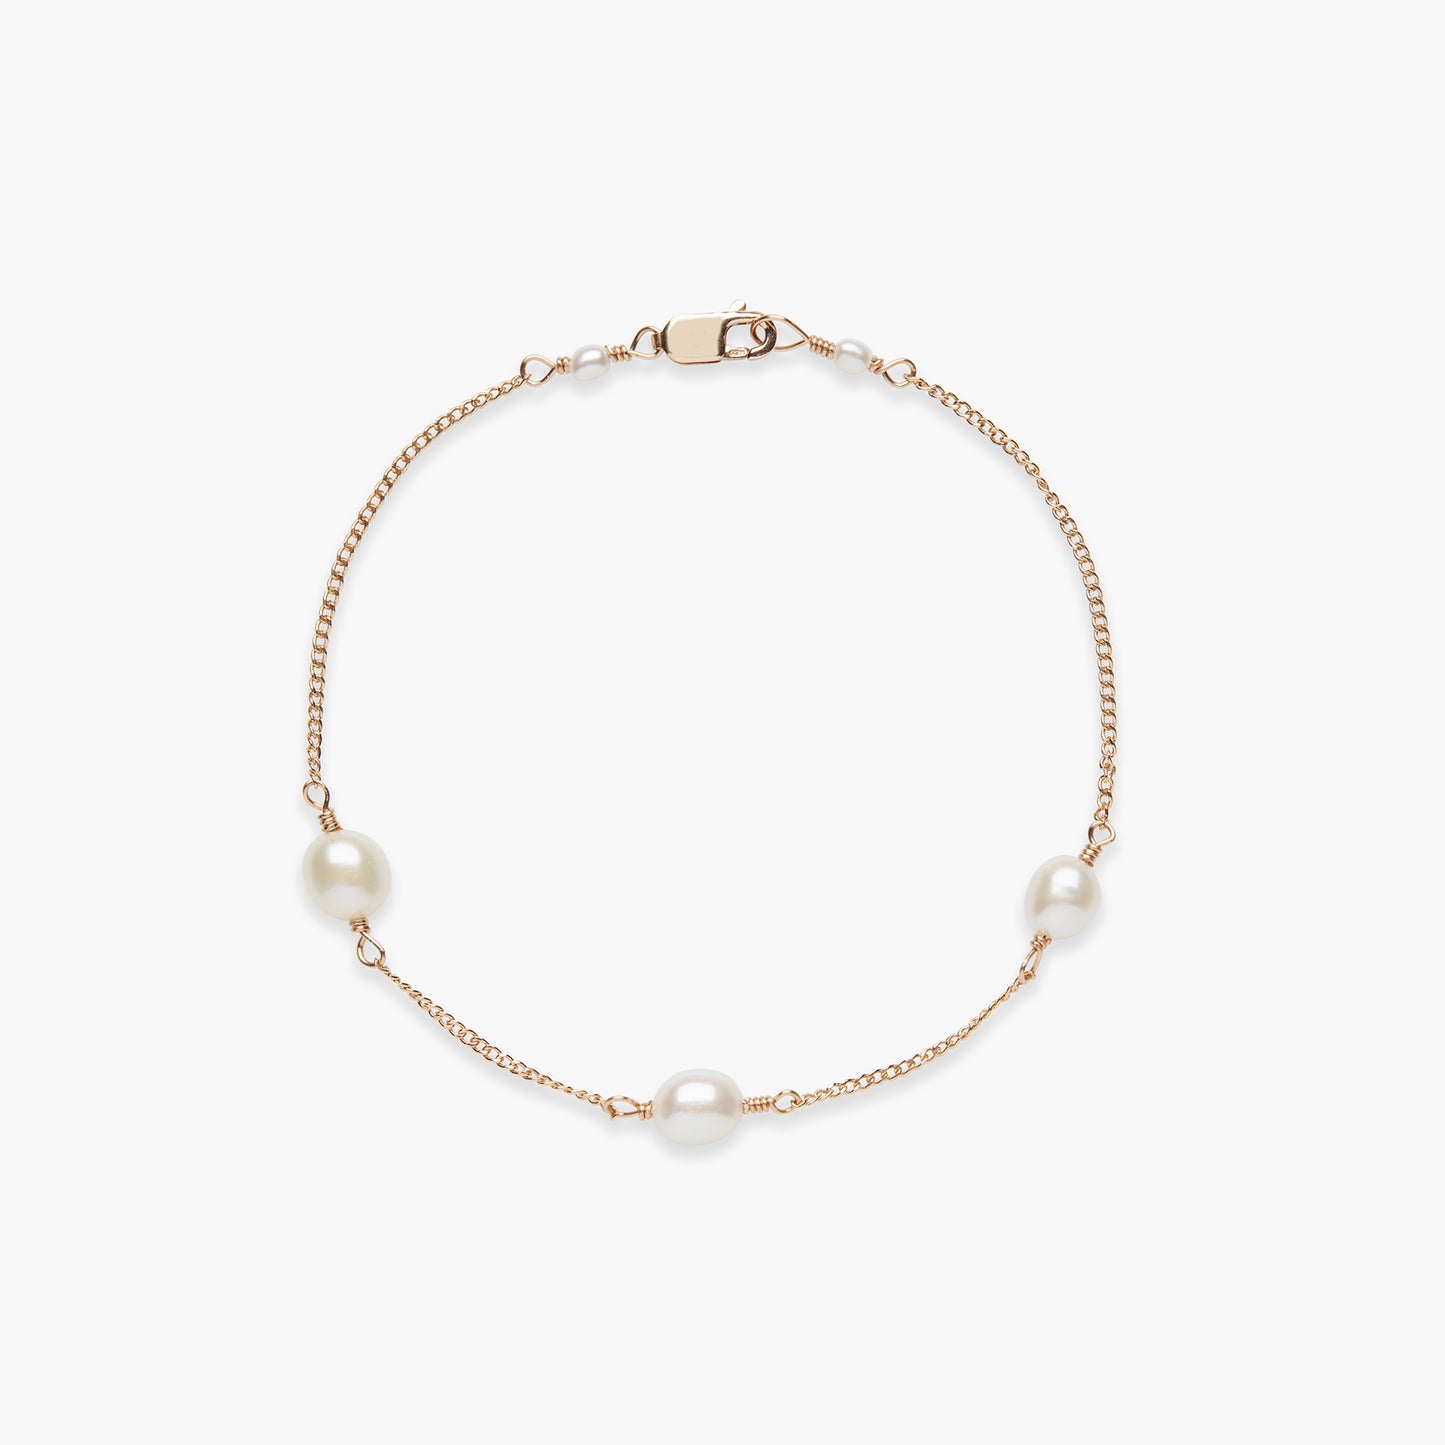 Pearl curb bracelet gold filled